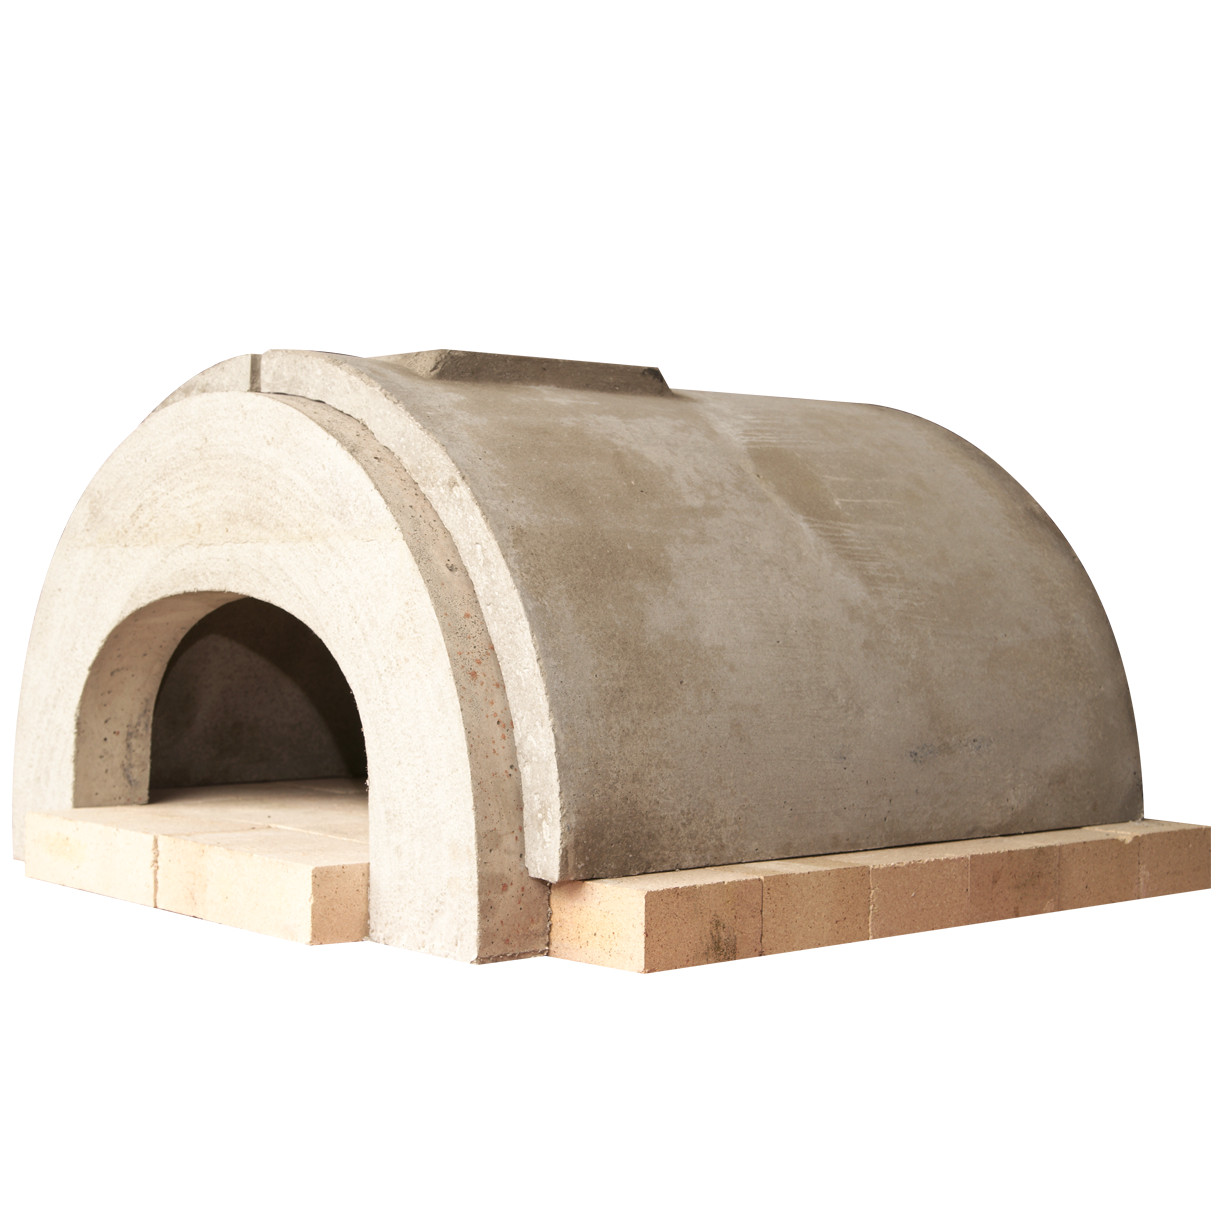 DIY Outdoor Pizza Oven Kits
 Outdoor Pizza Oven Builders Kit DIY – Roundboy Outdoor